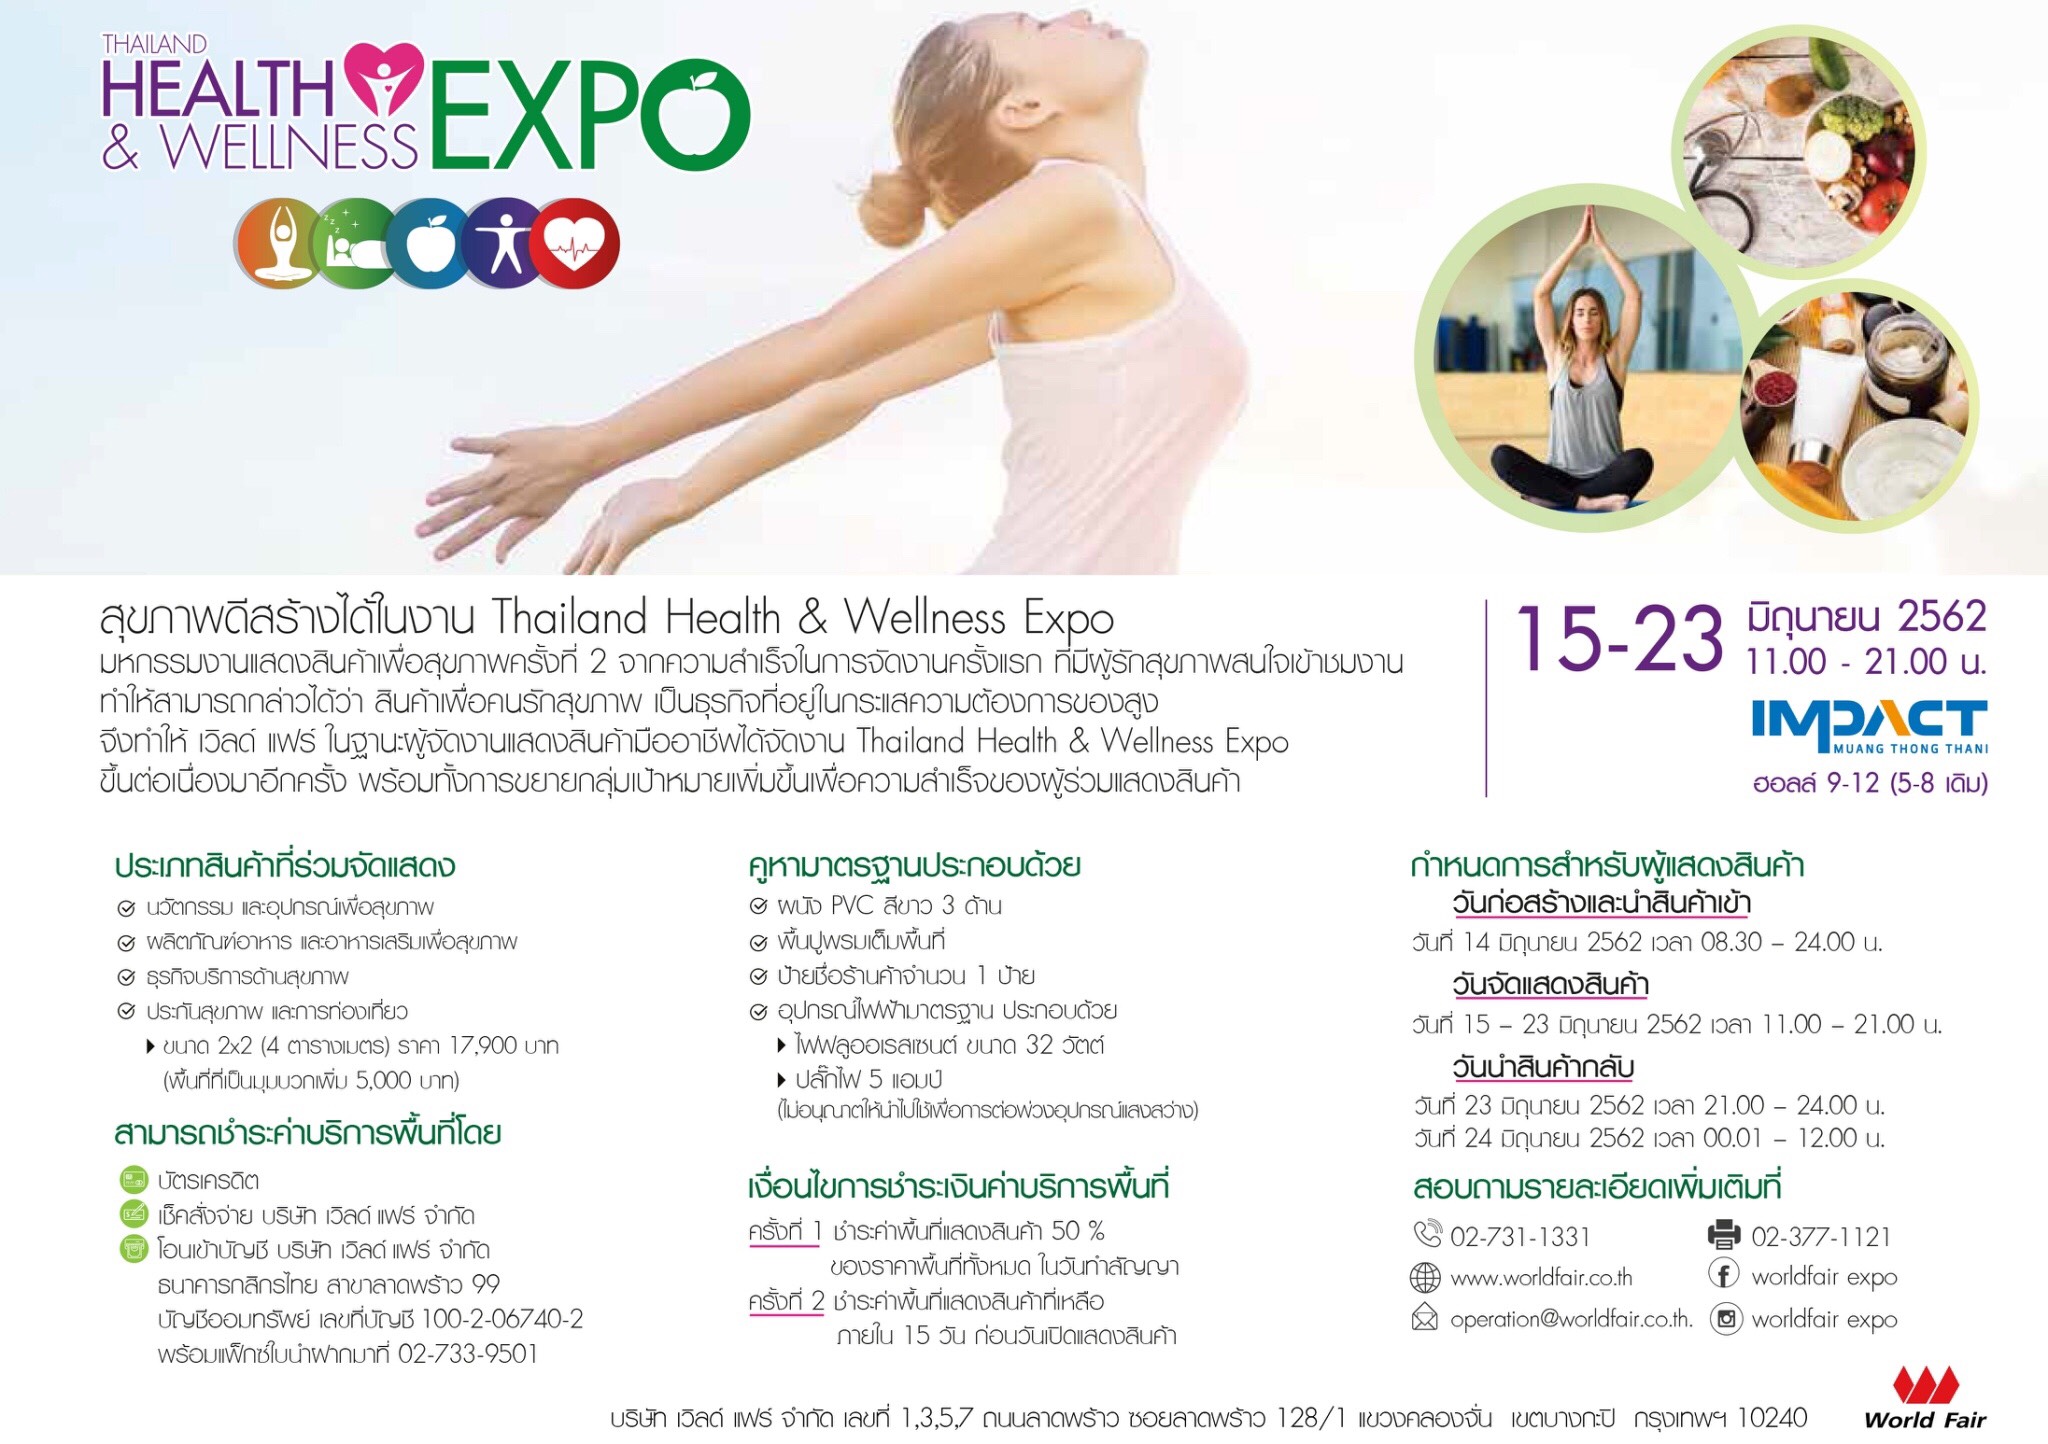 Thailand Health & Wellness Expo